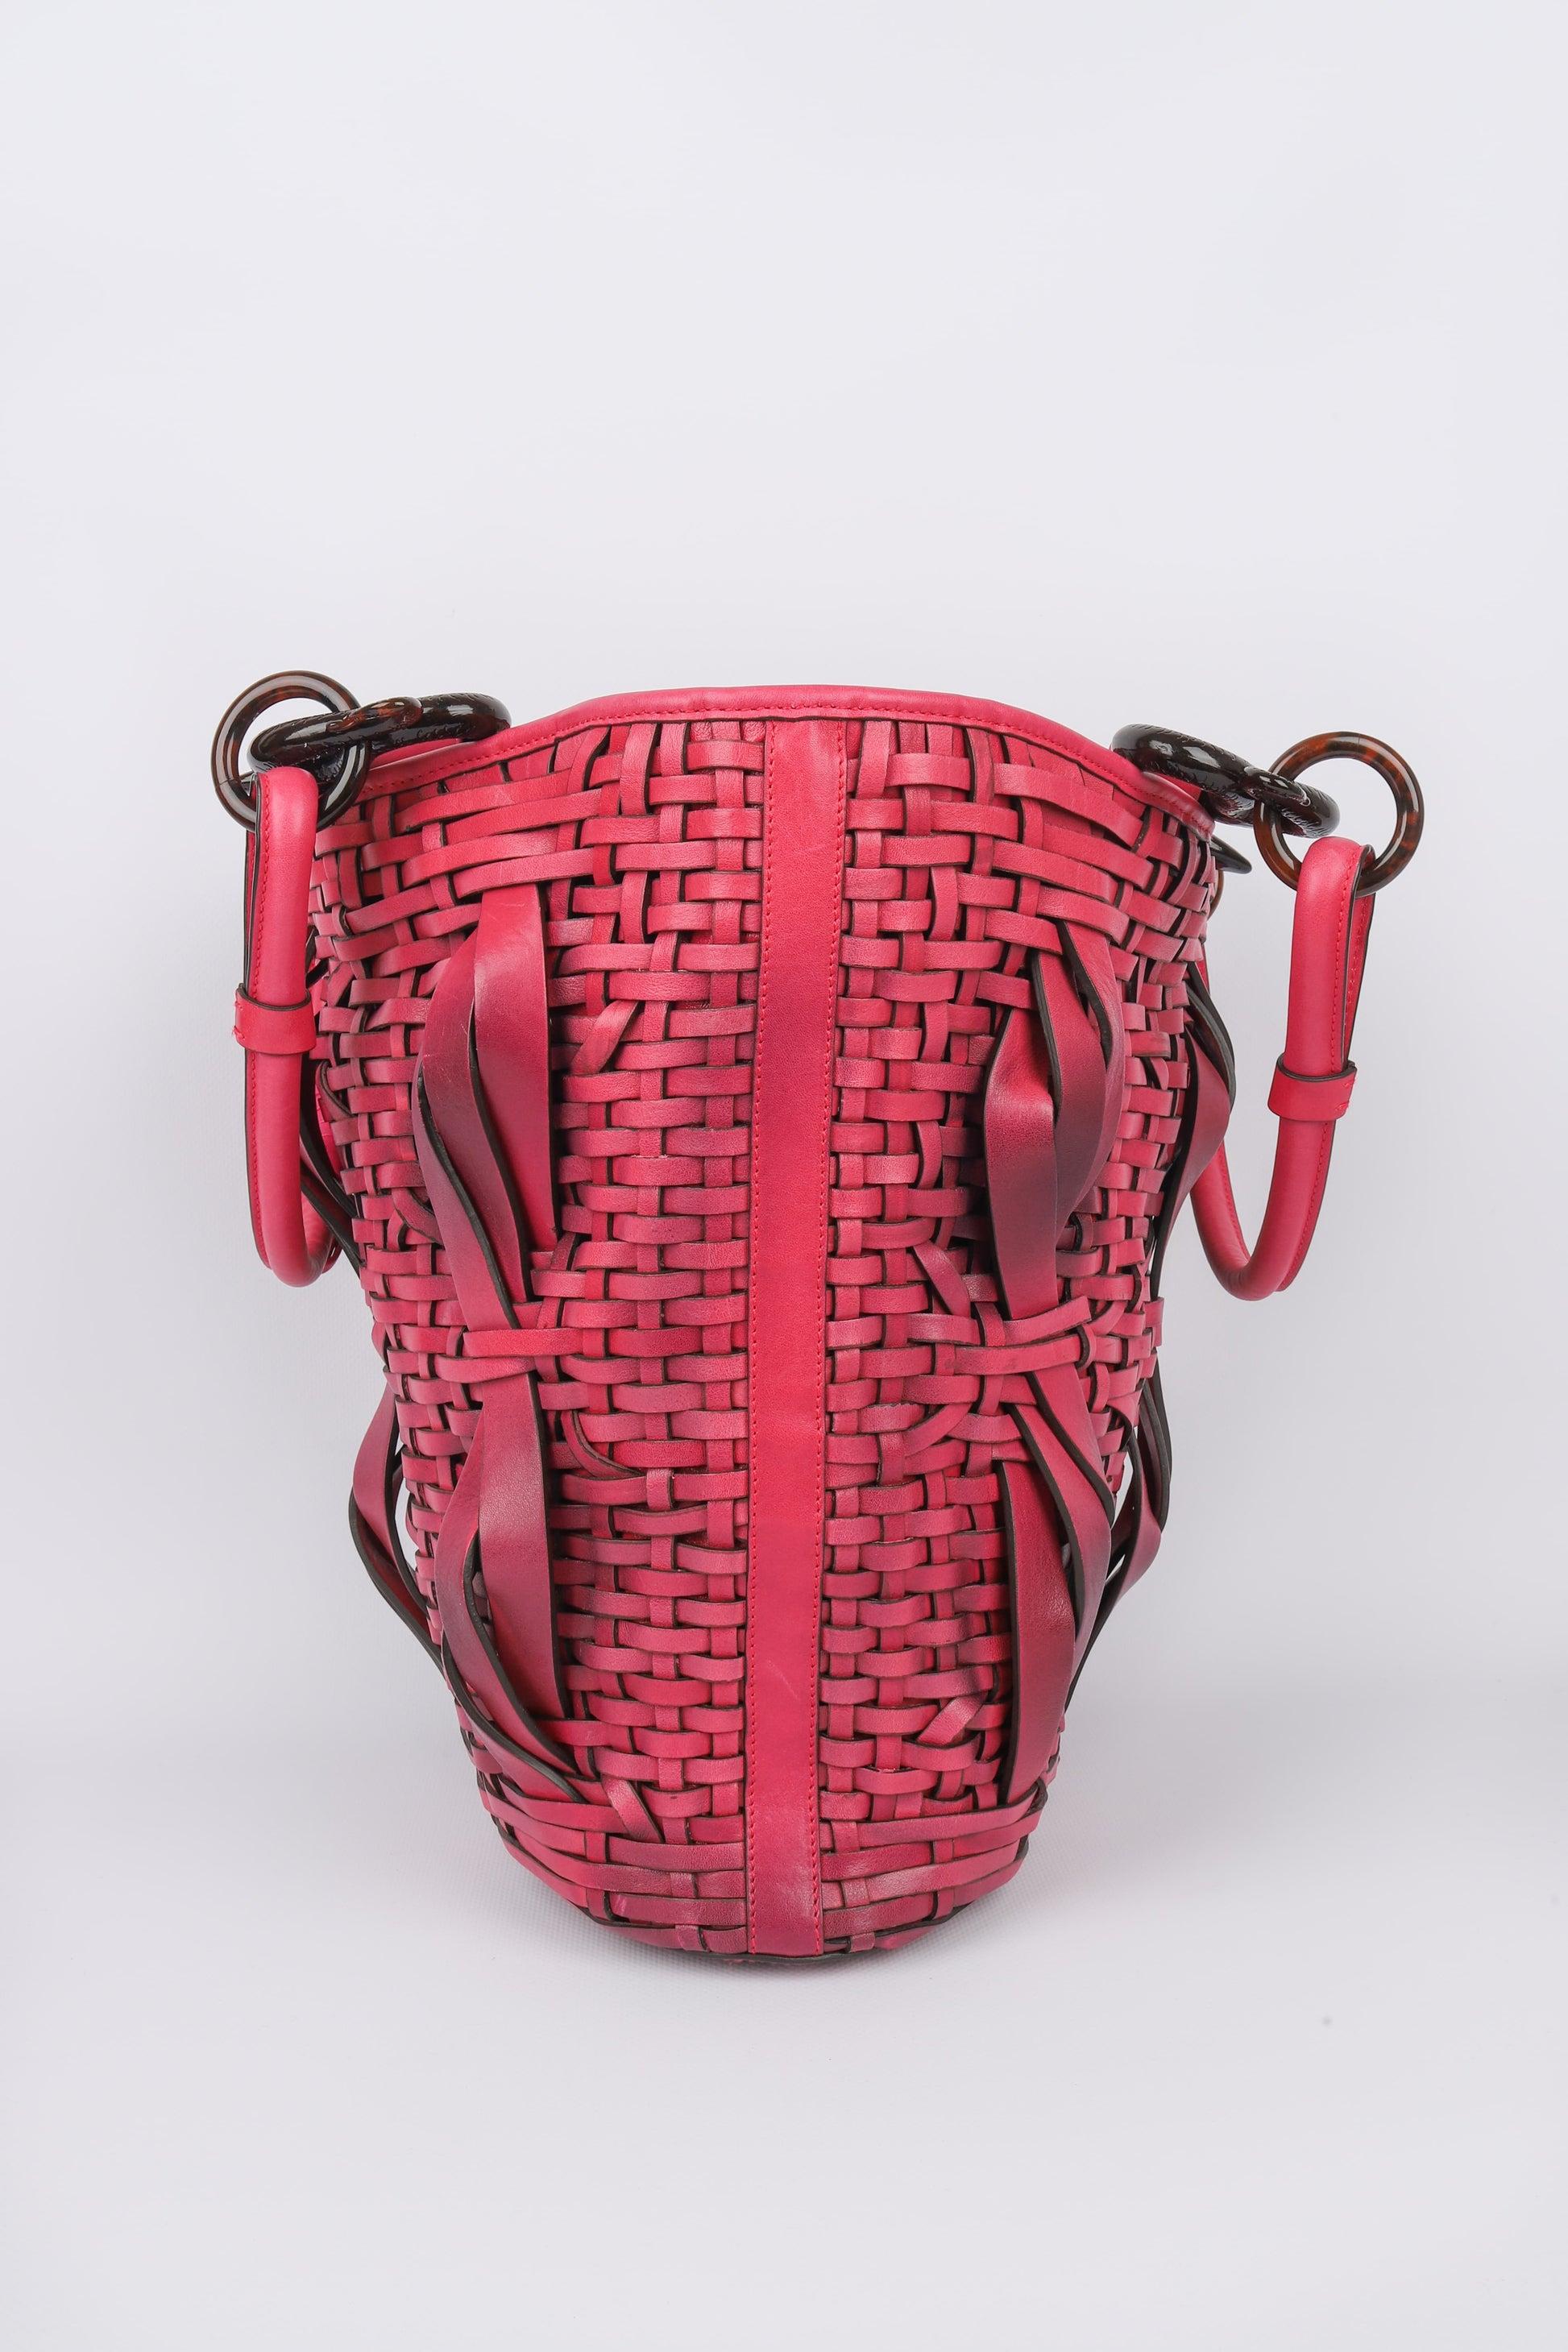 Dior - (Made in Italy) Eimertasche aus Bakelit und rosa Leder. Tasche mit einer Seriennummer. Herbst-Winter Collection'S 2007.

Zusätzliche Informationen:
Zustand: Sehr guter Zustand
Abmessungen: Höhe: 31 cm - Breite: 24 cm - Tiefe: 14 cm - Stiel: